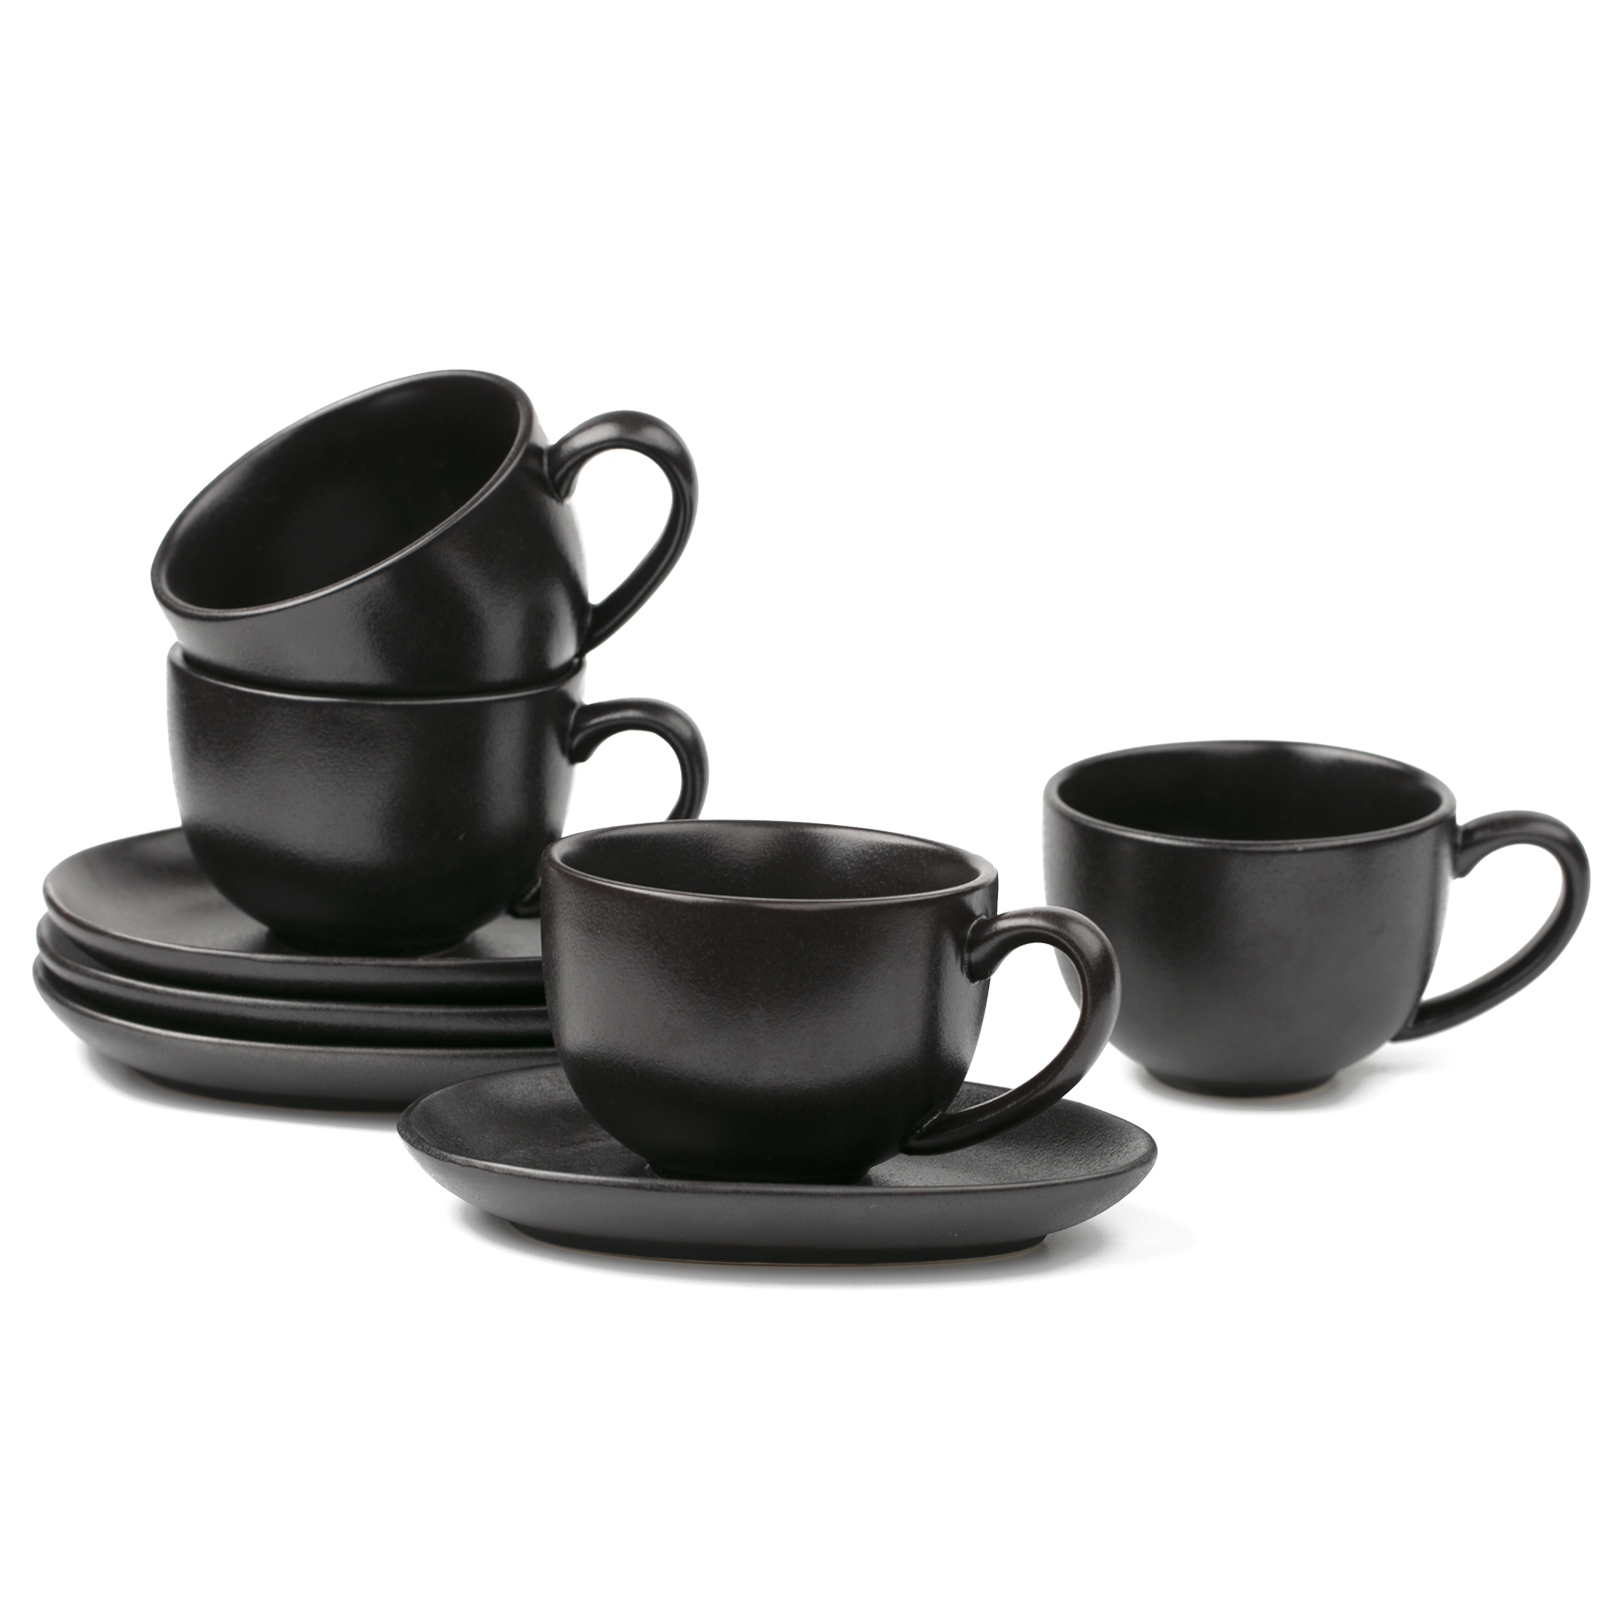 vicrays Ceramic Coffee Mug Set - 18 Ounce Large Stoneware Mug for